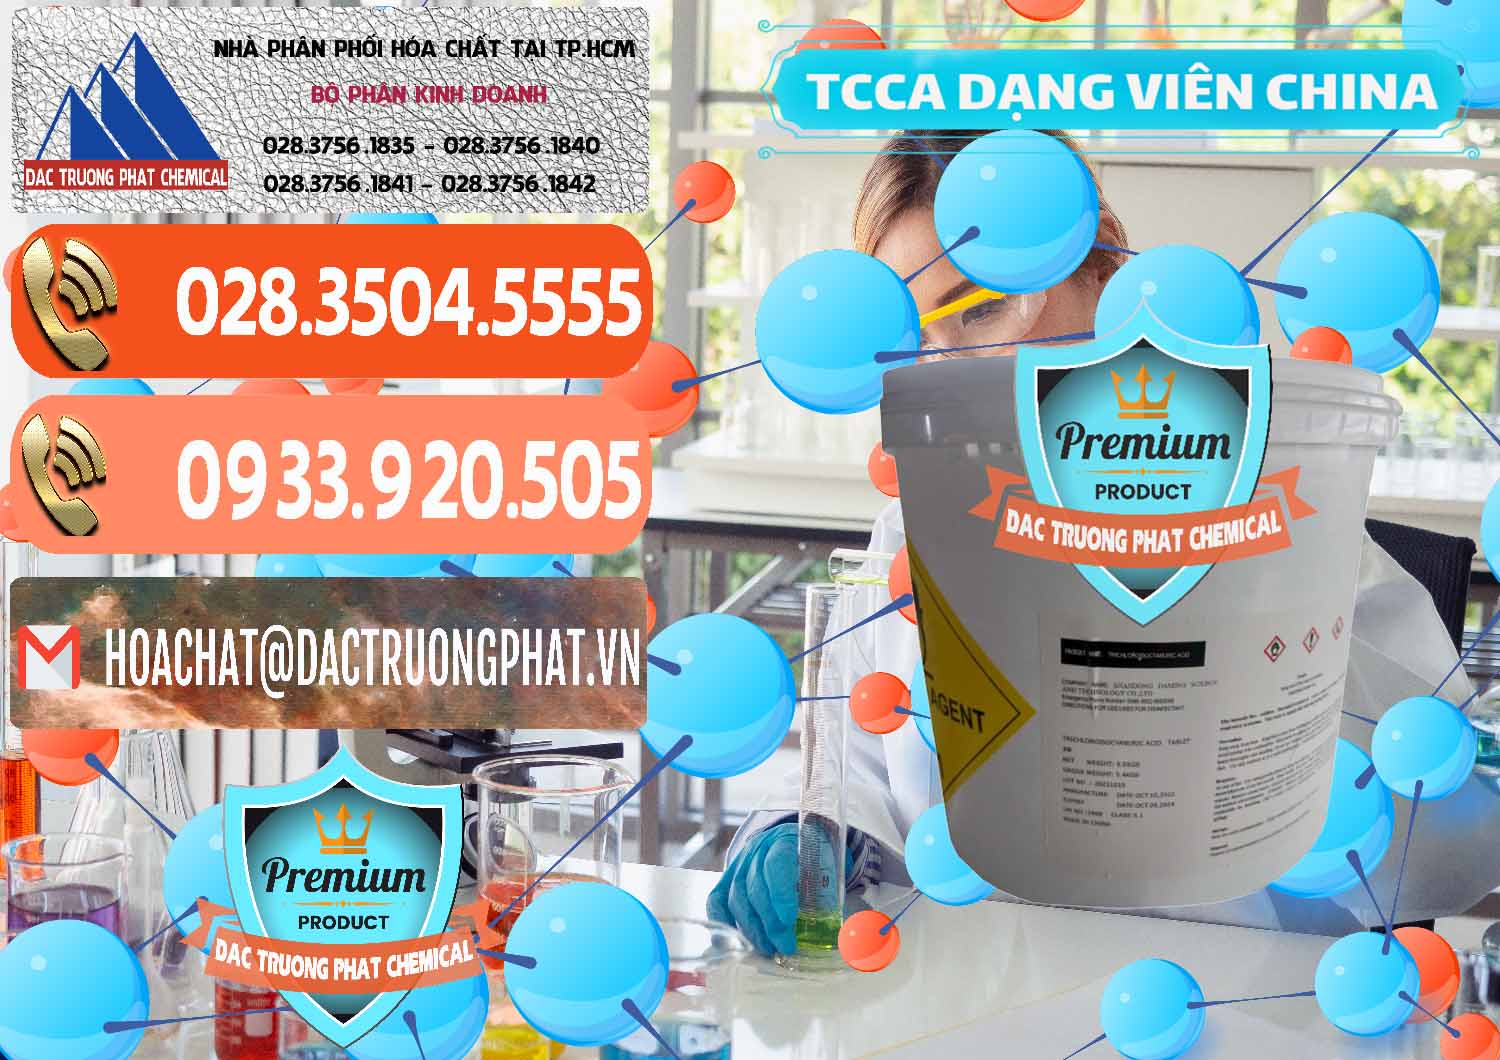 Chuyên phân phối _ bán TCCA - Acid Trichloroisocyanuric Dạng Viên Thùng 5kg Trung Quốc China - 0379 - Công ty bán và cung cấp hóa chất tại TP.HCM - hoachatmientay.com